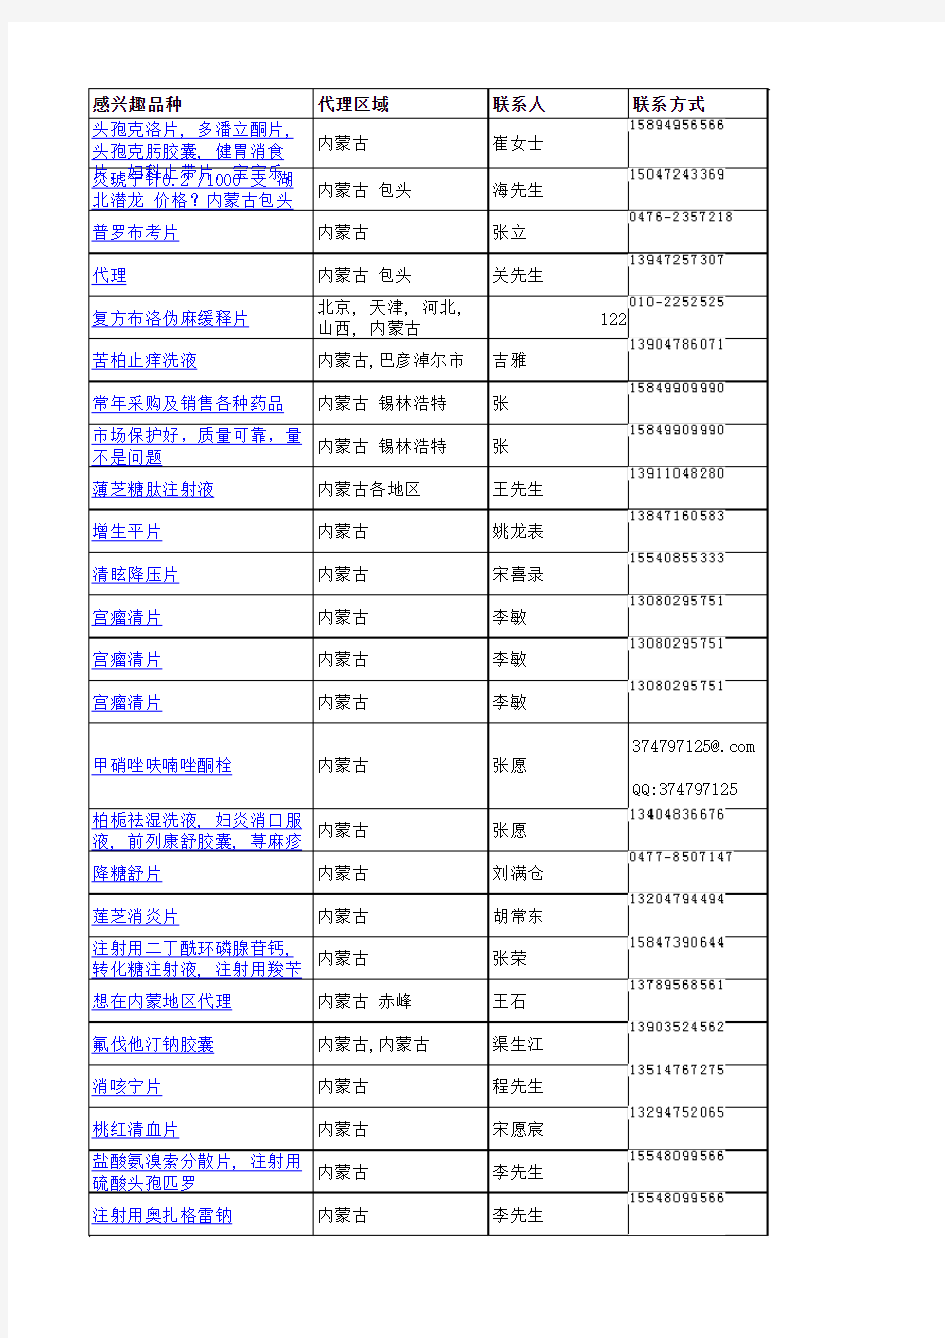 内蒙古医药代理商名单(2010年11月1日-2010年11月19日)